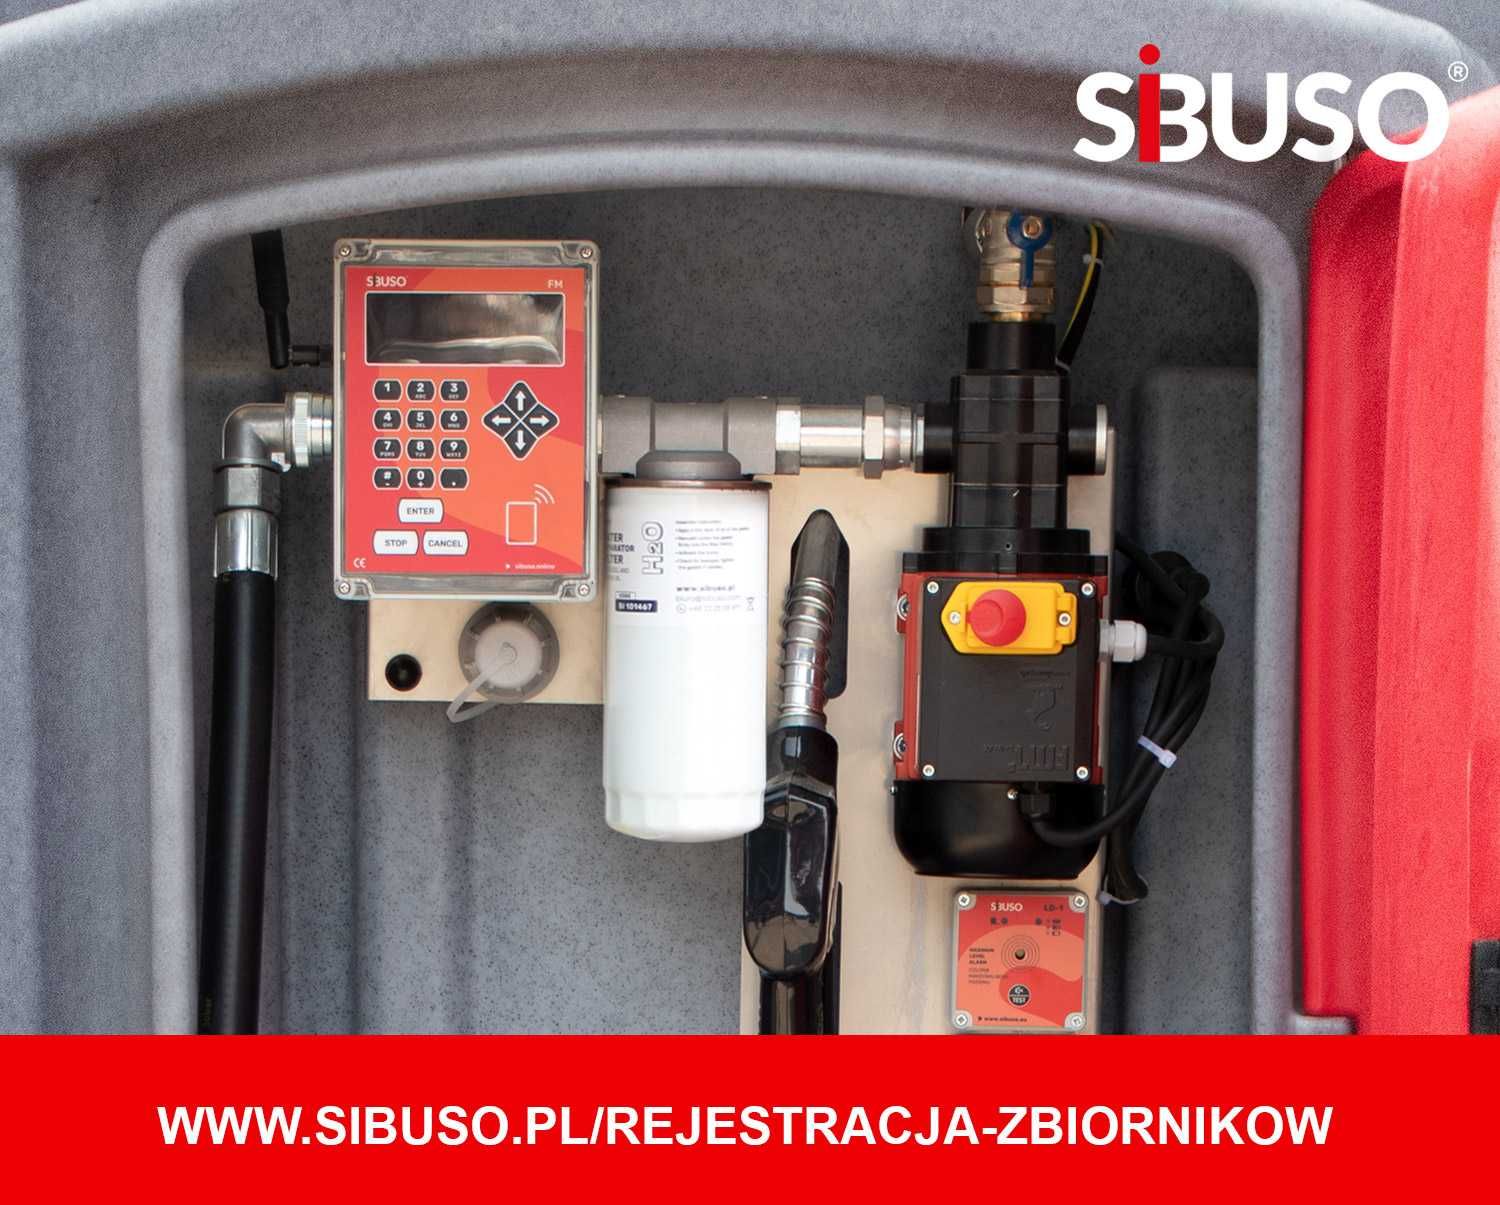 Zbiornik paliwo olej napędowy SIBUSO NVCL 1500 5lat gwarancji na pompę